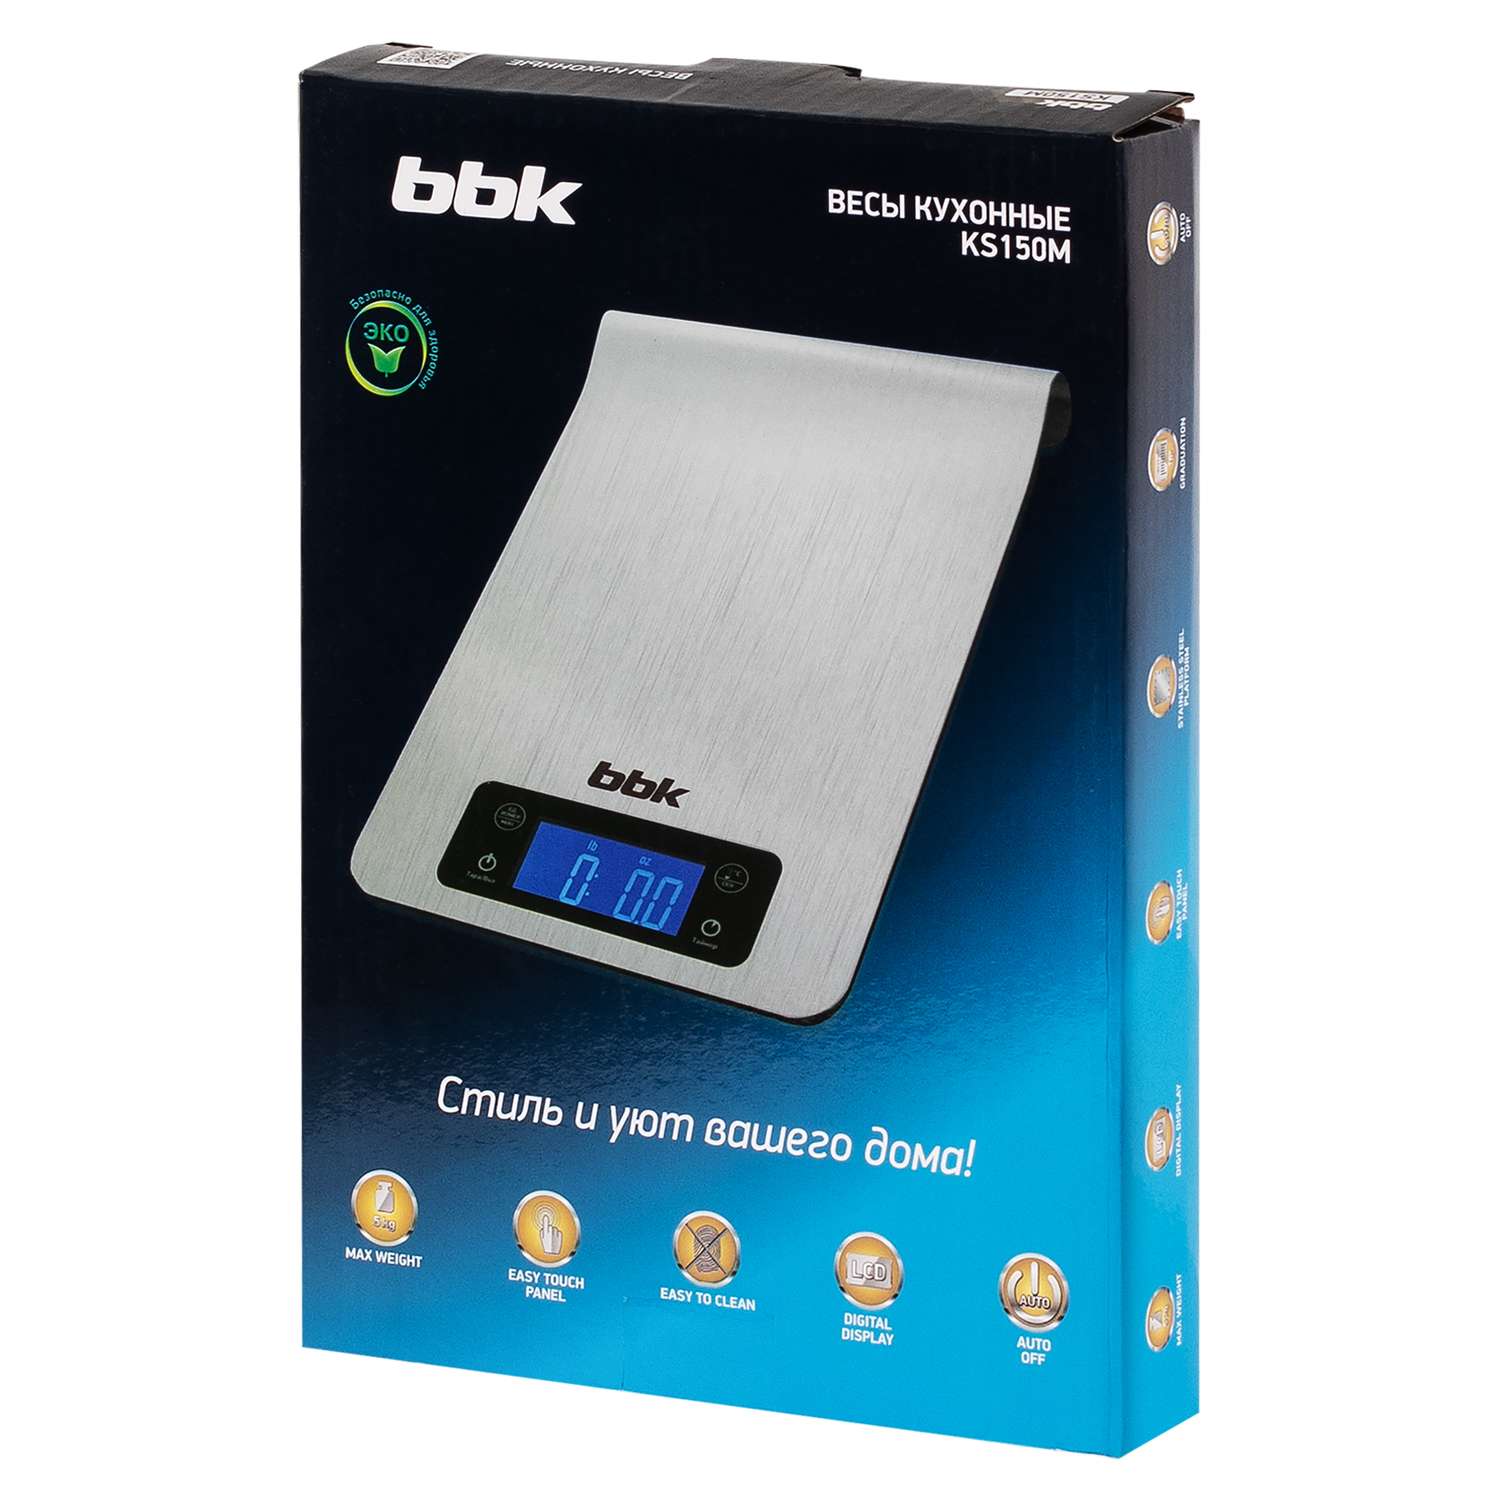 Весы кухонные BBK KS150M металлик электронные точность 1 г максимальный вес 5 кг - фото 12